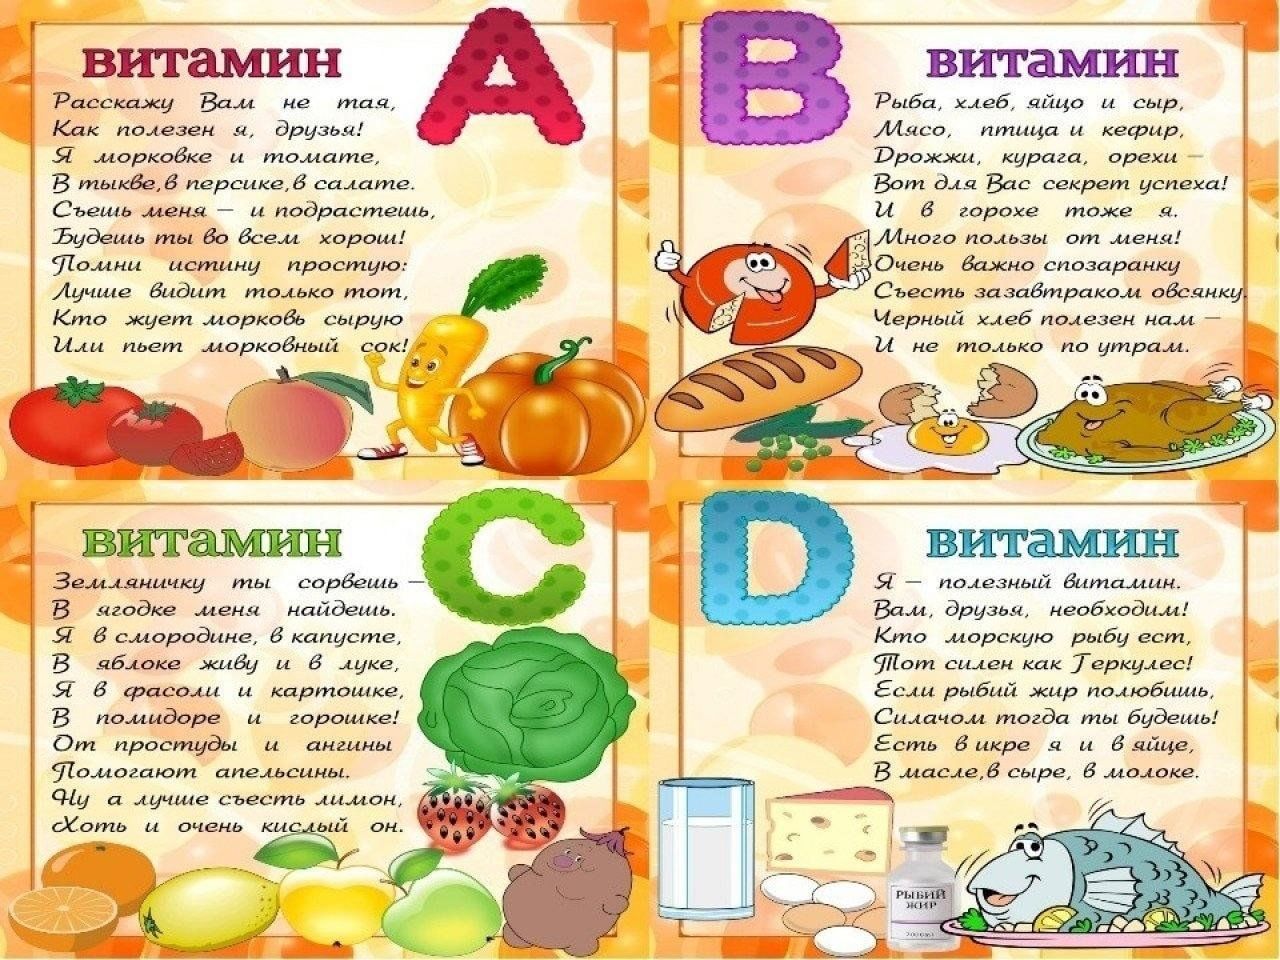 Овощи фрукты и их витамины. Витамины для детей. Тема витамины для детей. Плакат витамины. Витамины в овощах и фруктах для детей.